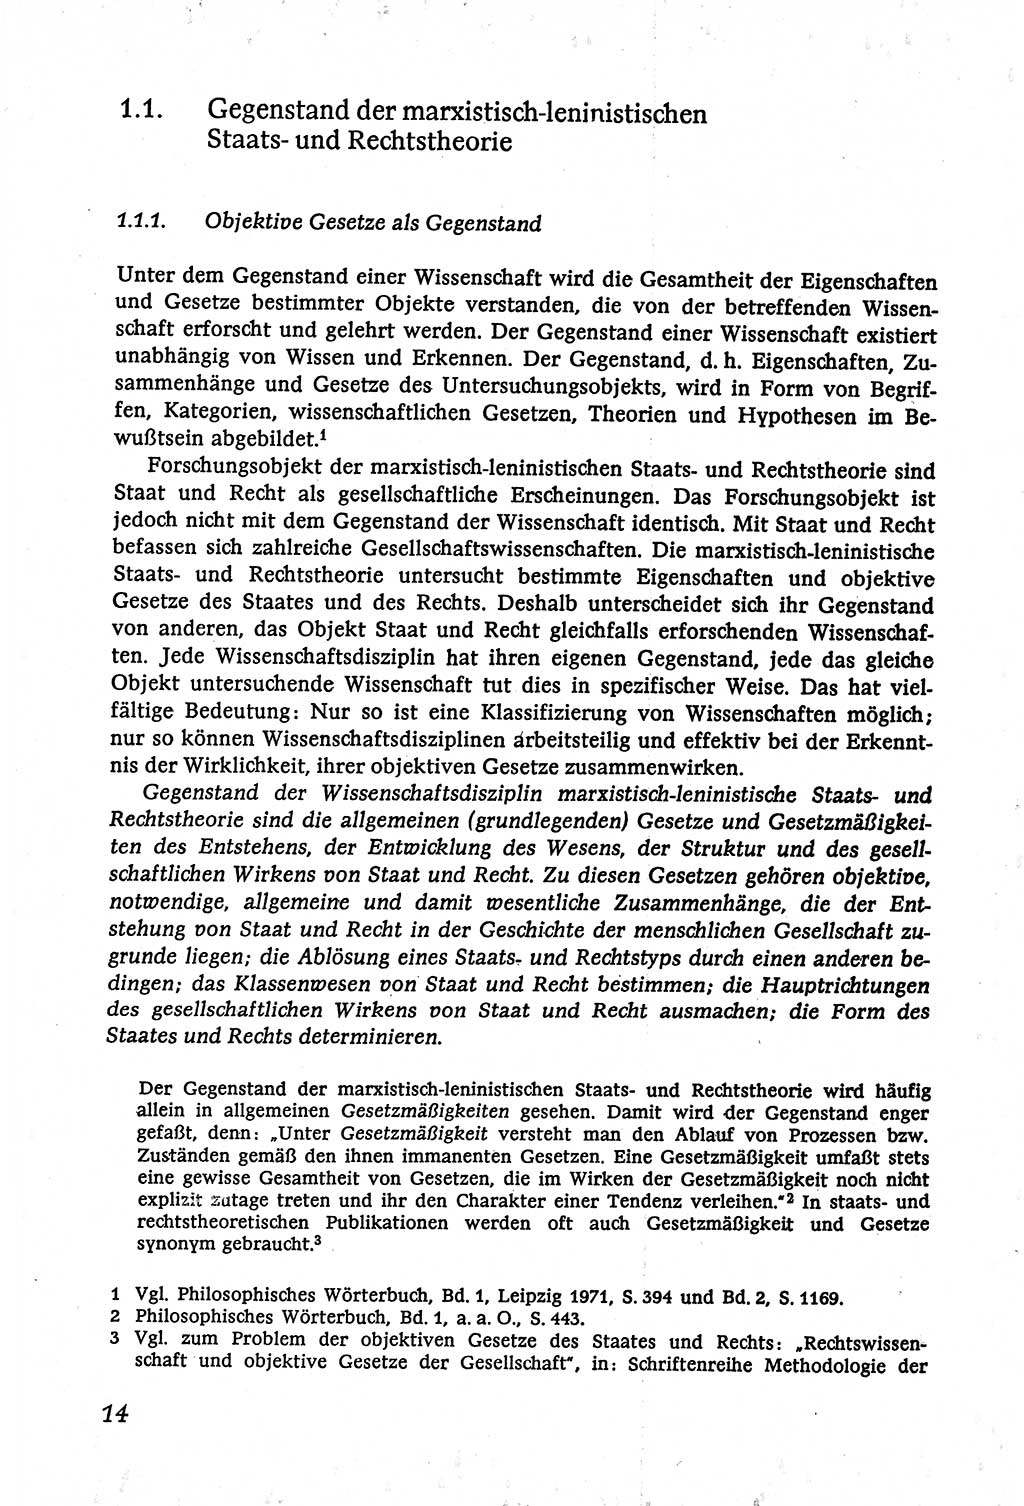 Marxistisch-leninistische (ML) Staats- und Rechtstheorie [Deutsche Demokratische Republik (DDR)], Lehrbuch 1980, Seite 14 (ML St.-R.-Th. DDR Lb. 1980, S. 14)